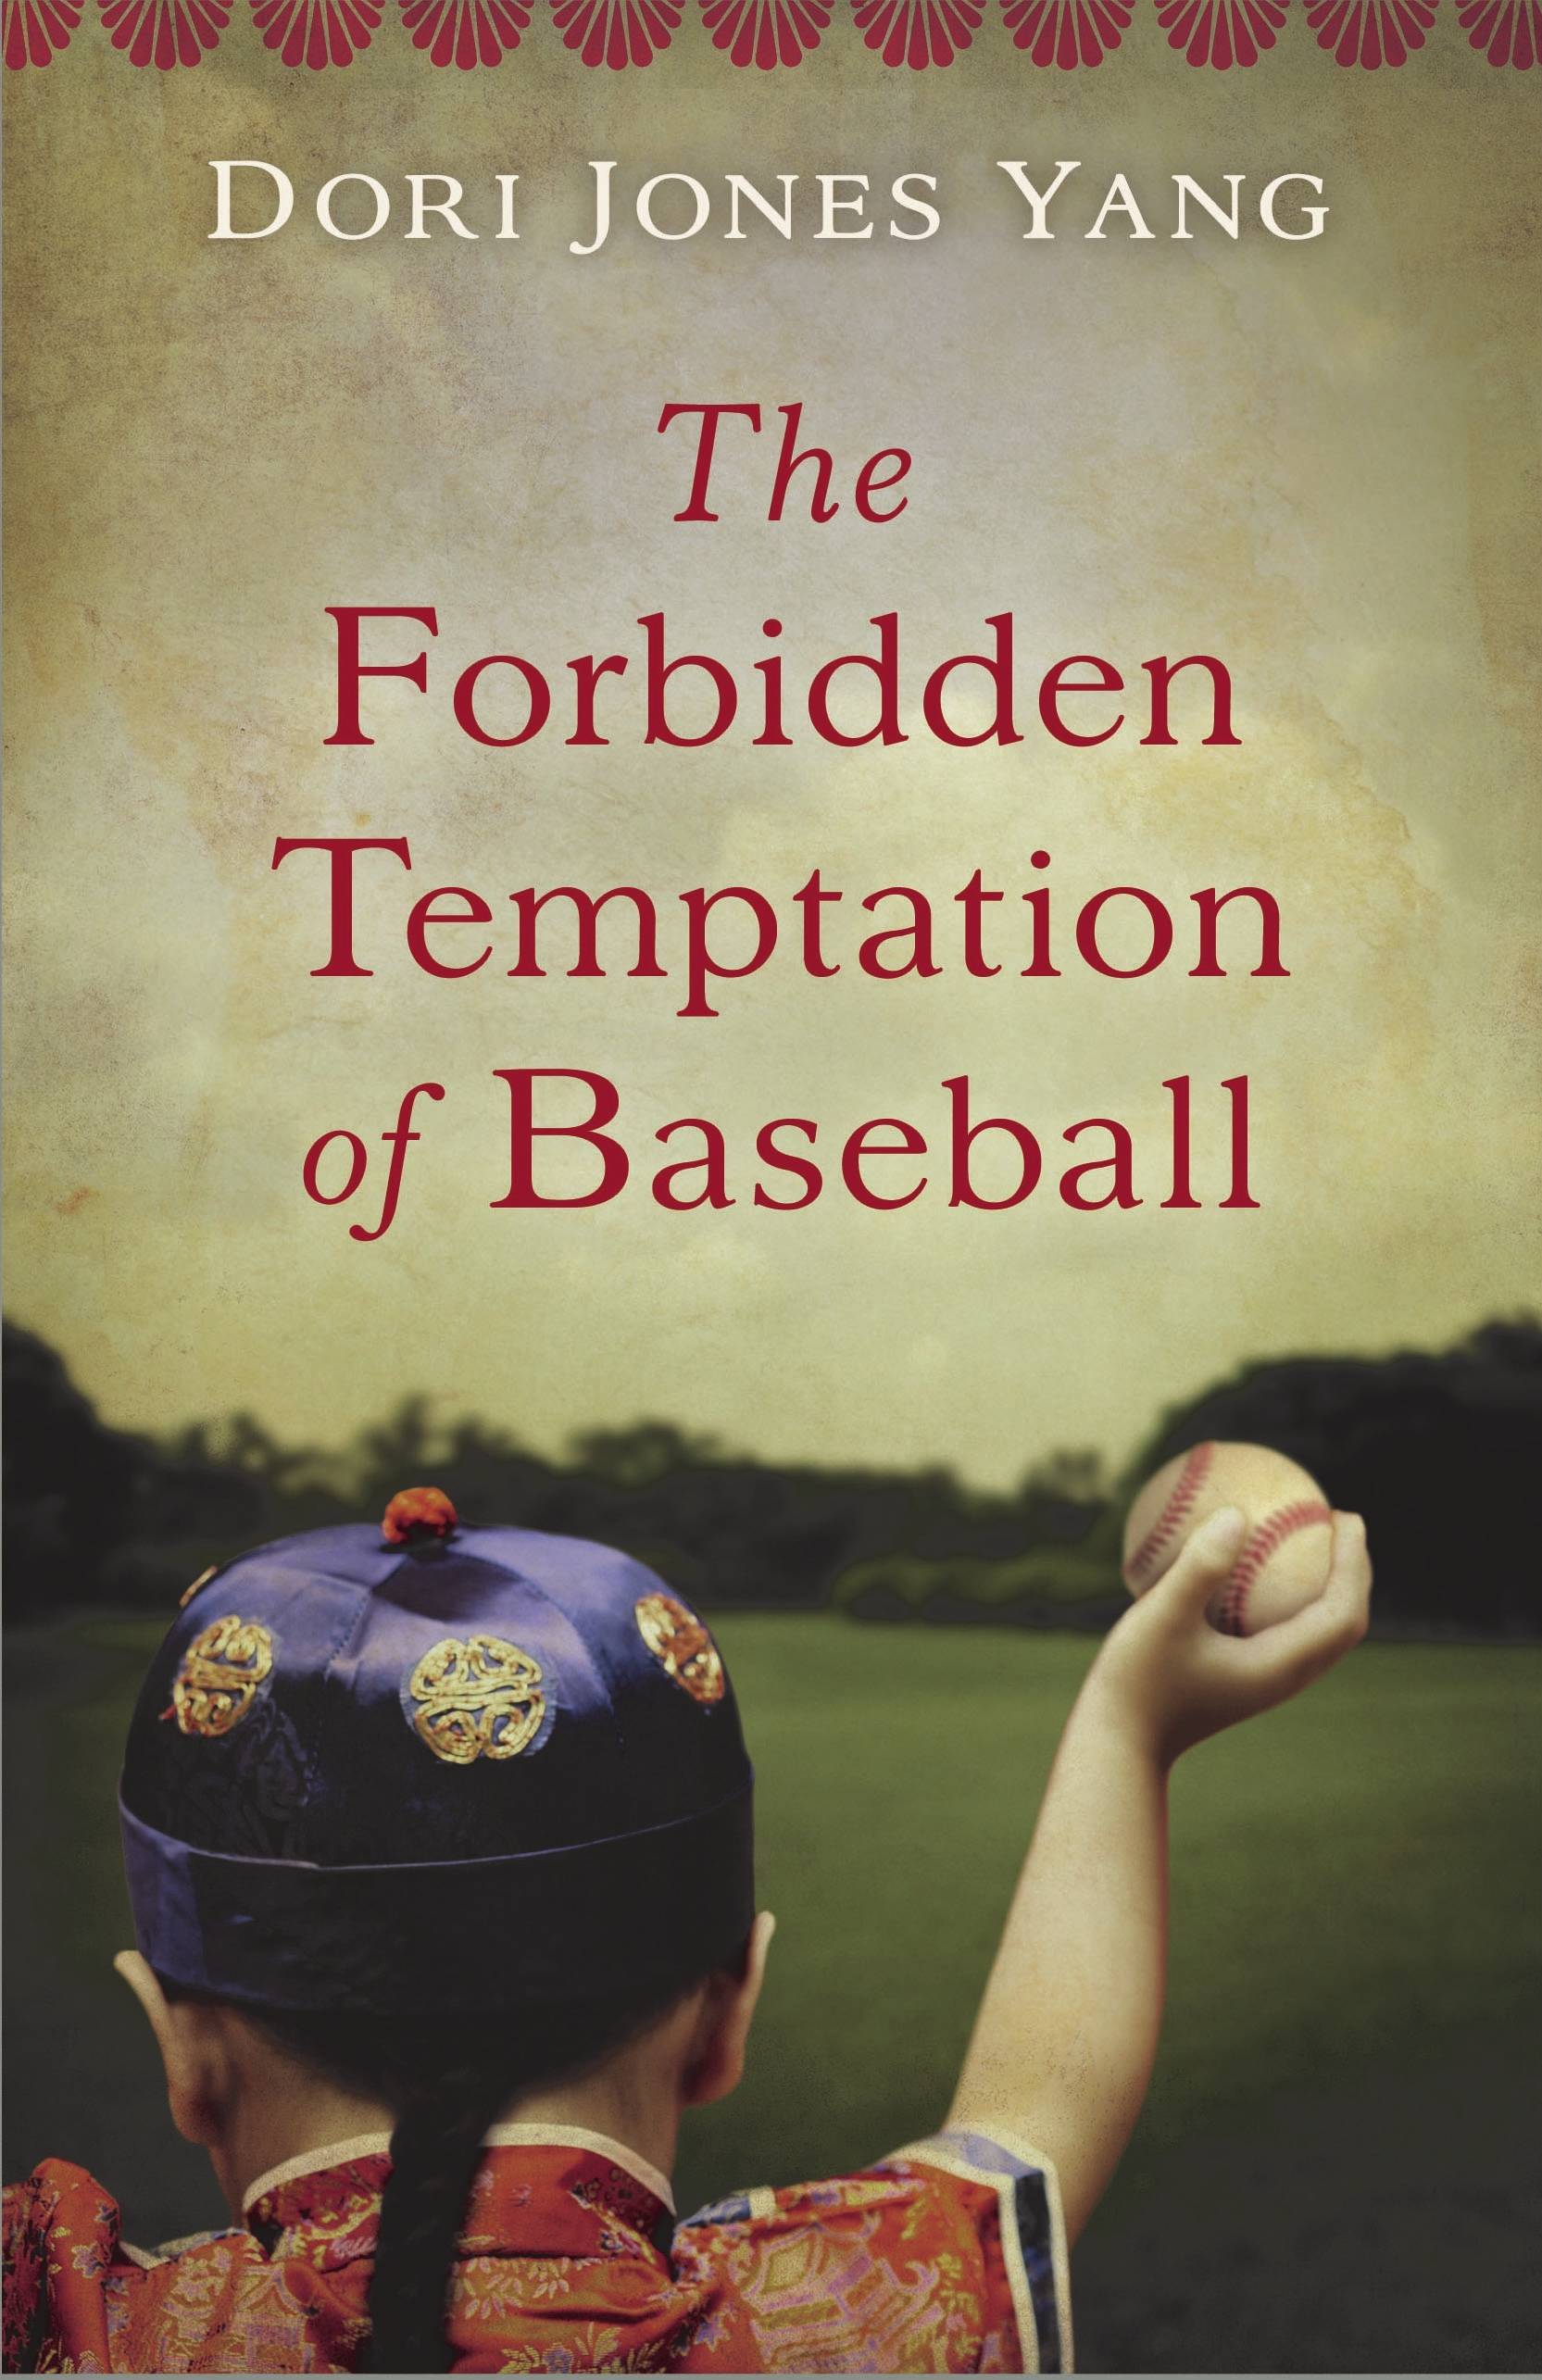 “The Forbidden Temptation of Baseball”